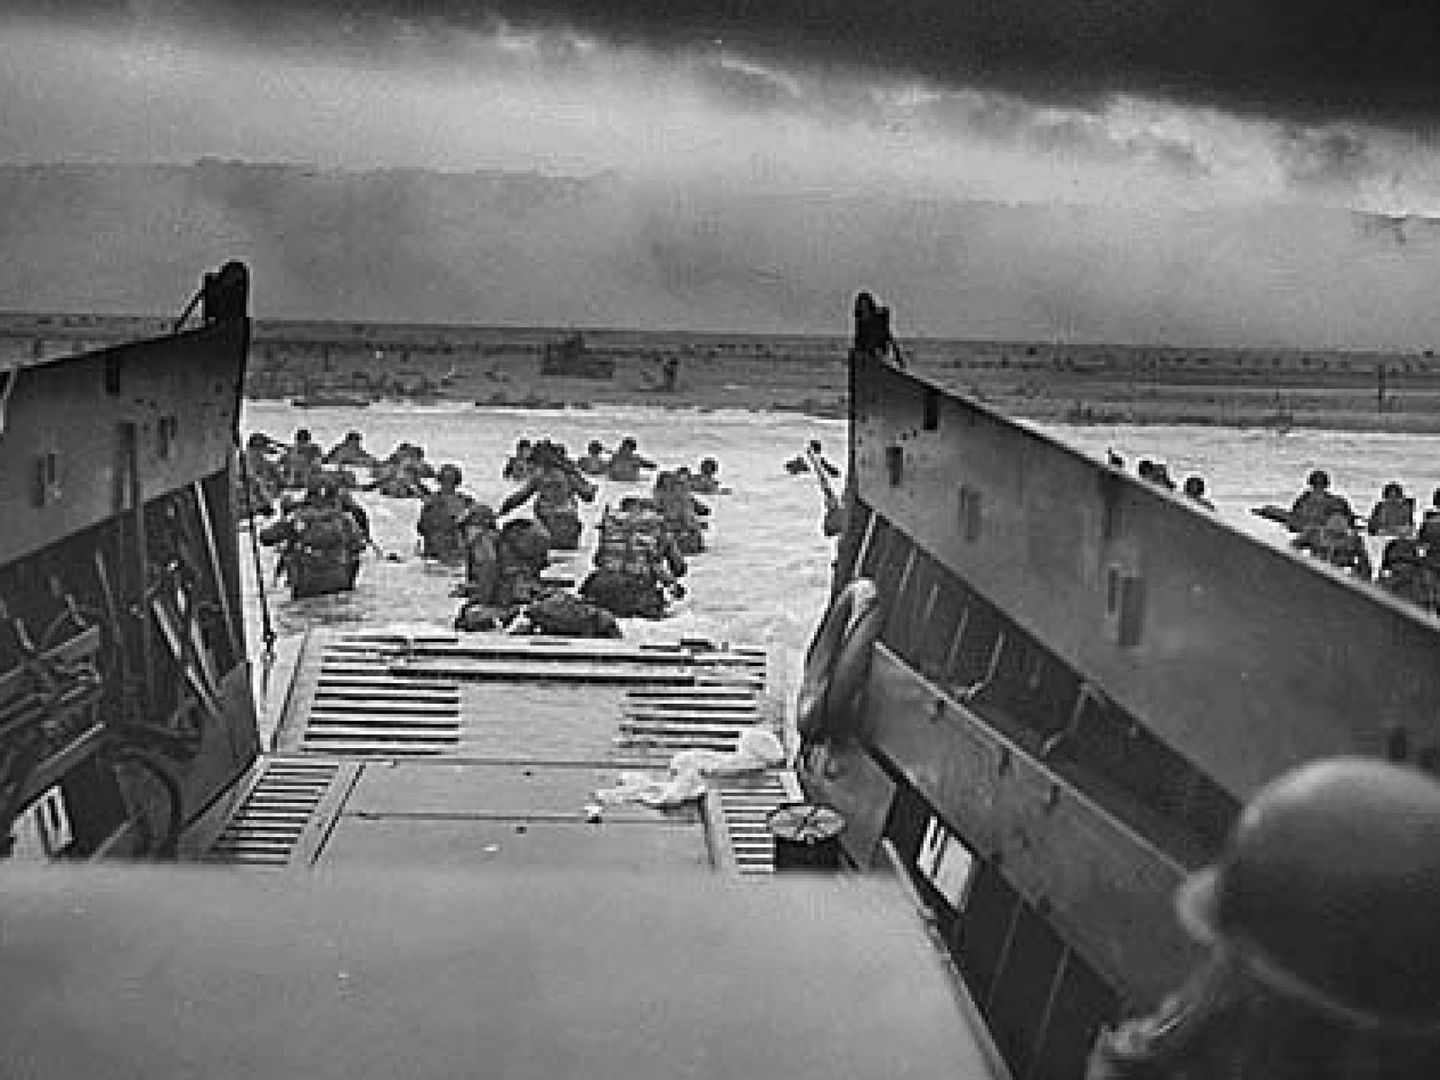 Fotografía facilitada por el ejército de los EEUU que muestra a soldados que esquivan fuego enemigo durante el desembarco de Normandía (Francia).